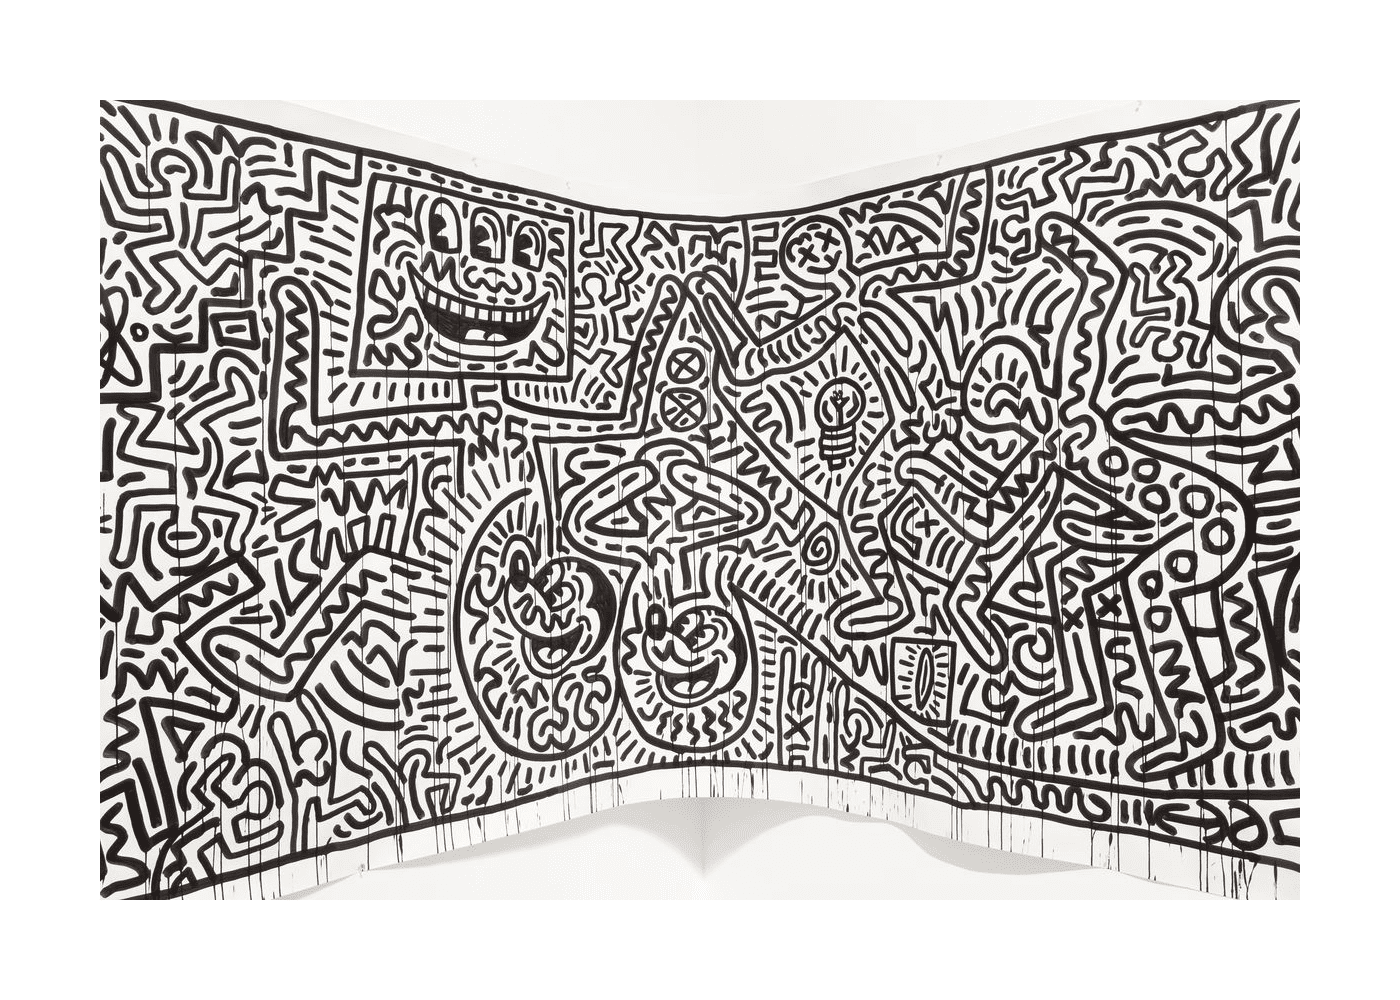  un fresco de Keith Haring 